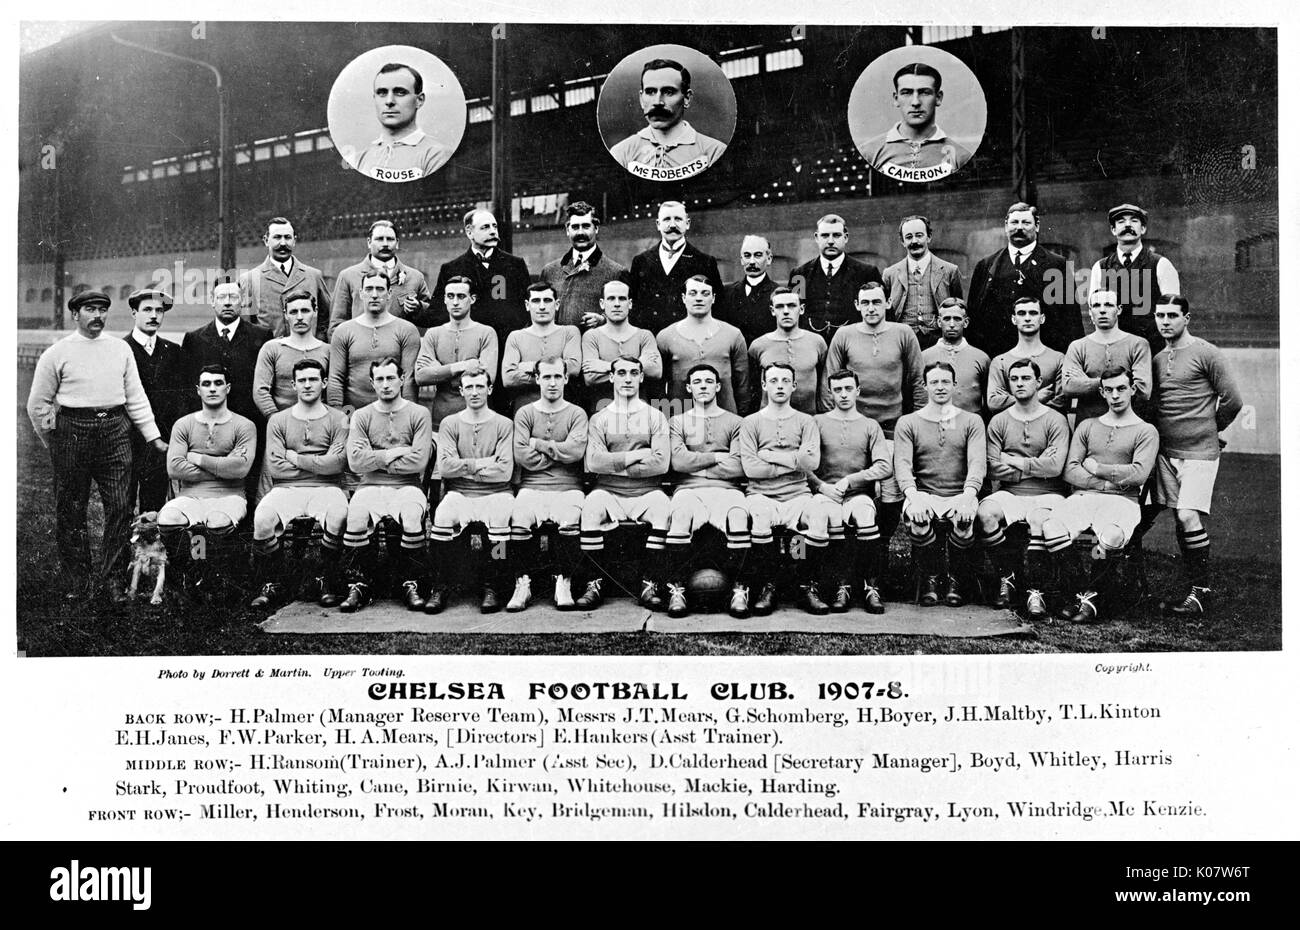 Le Club de Football de Chelsea et de l'équipe, de gestion de la saison 1907-1908 (les noms sous la photo). Date : 1907-1908 Banque D'Images